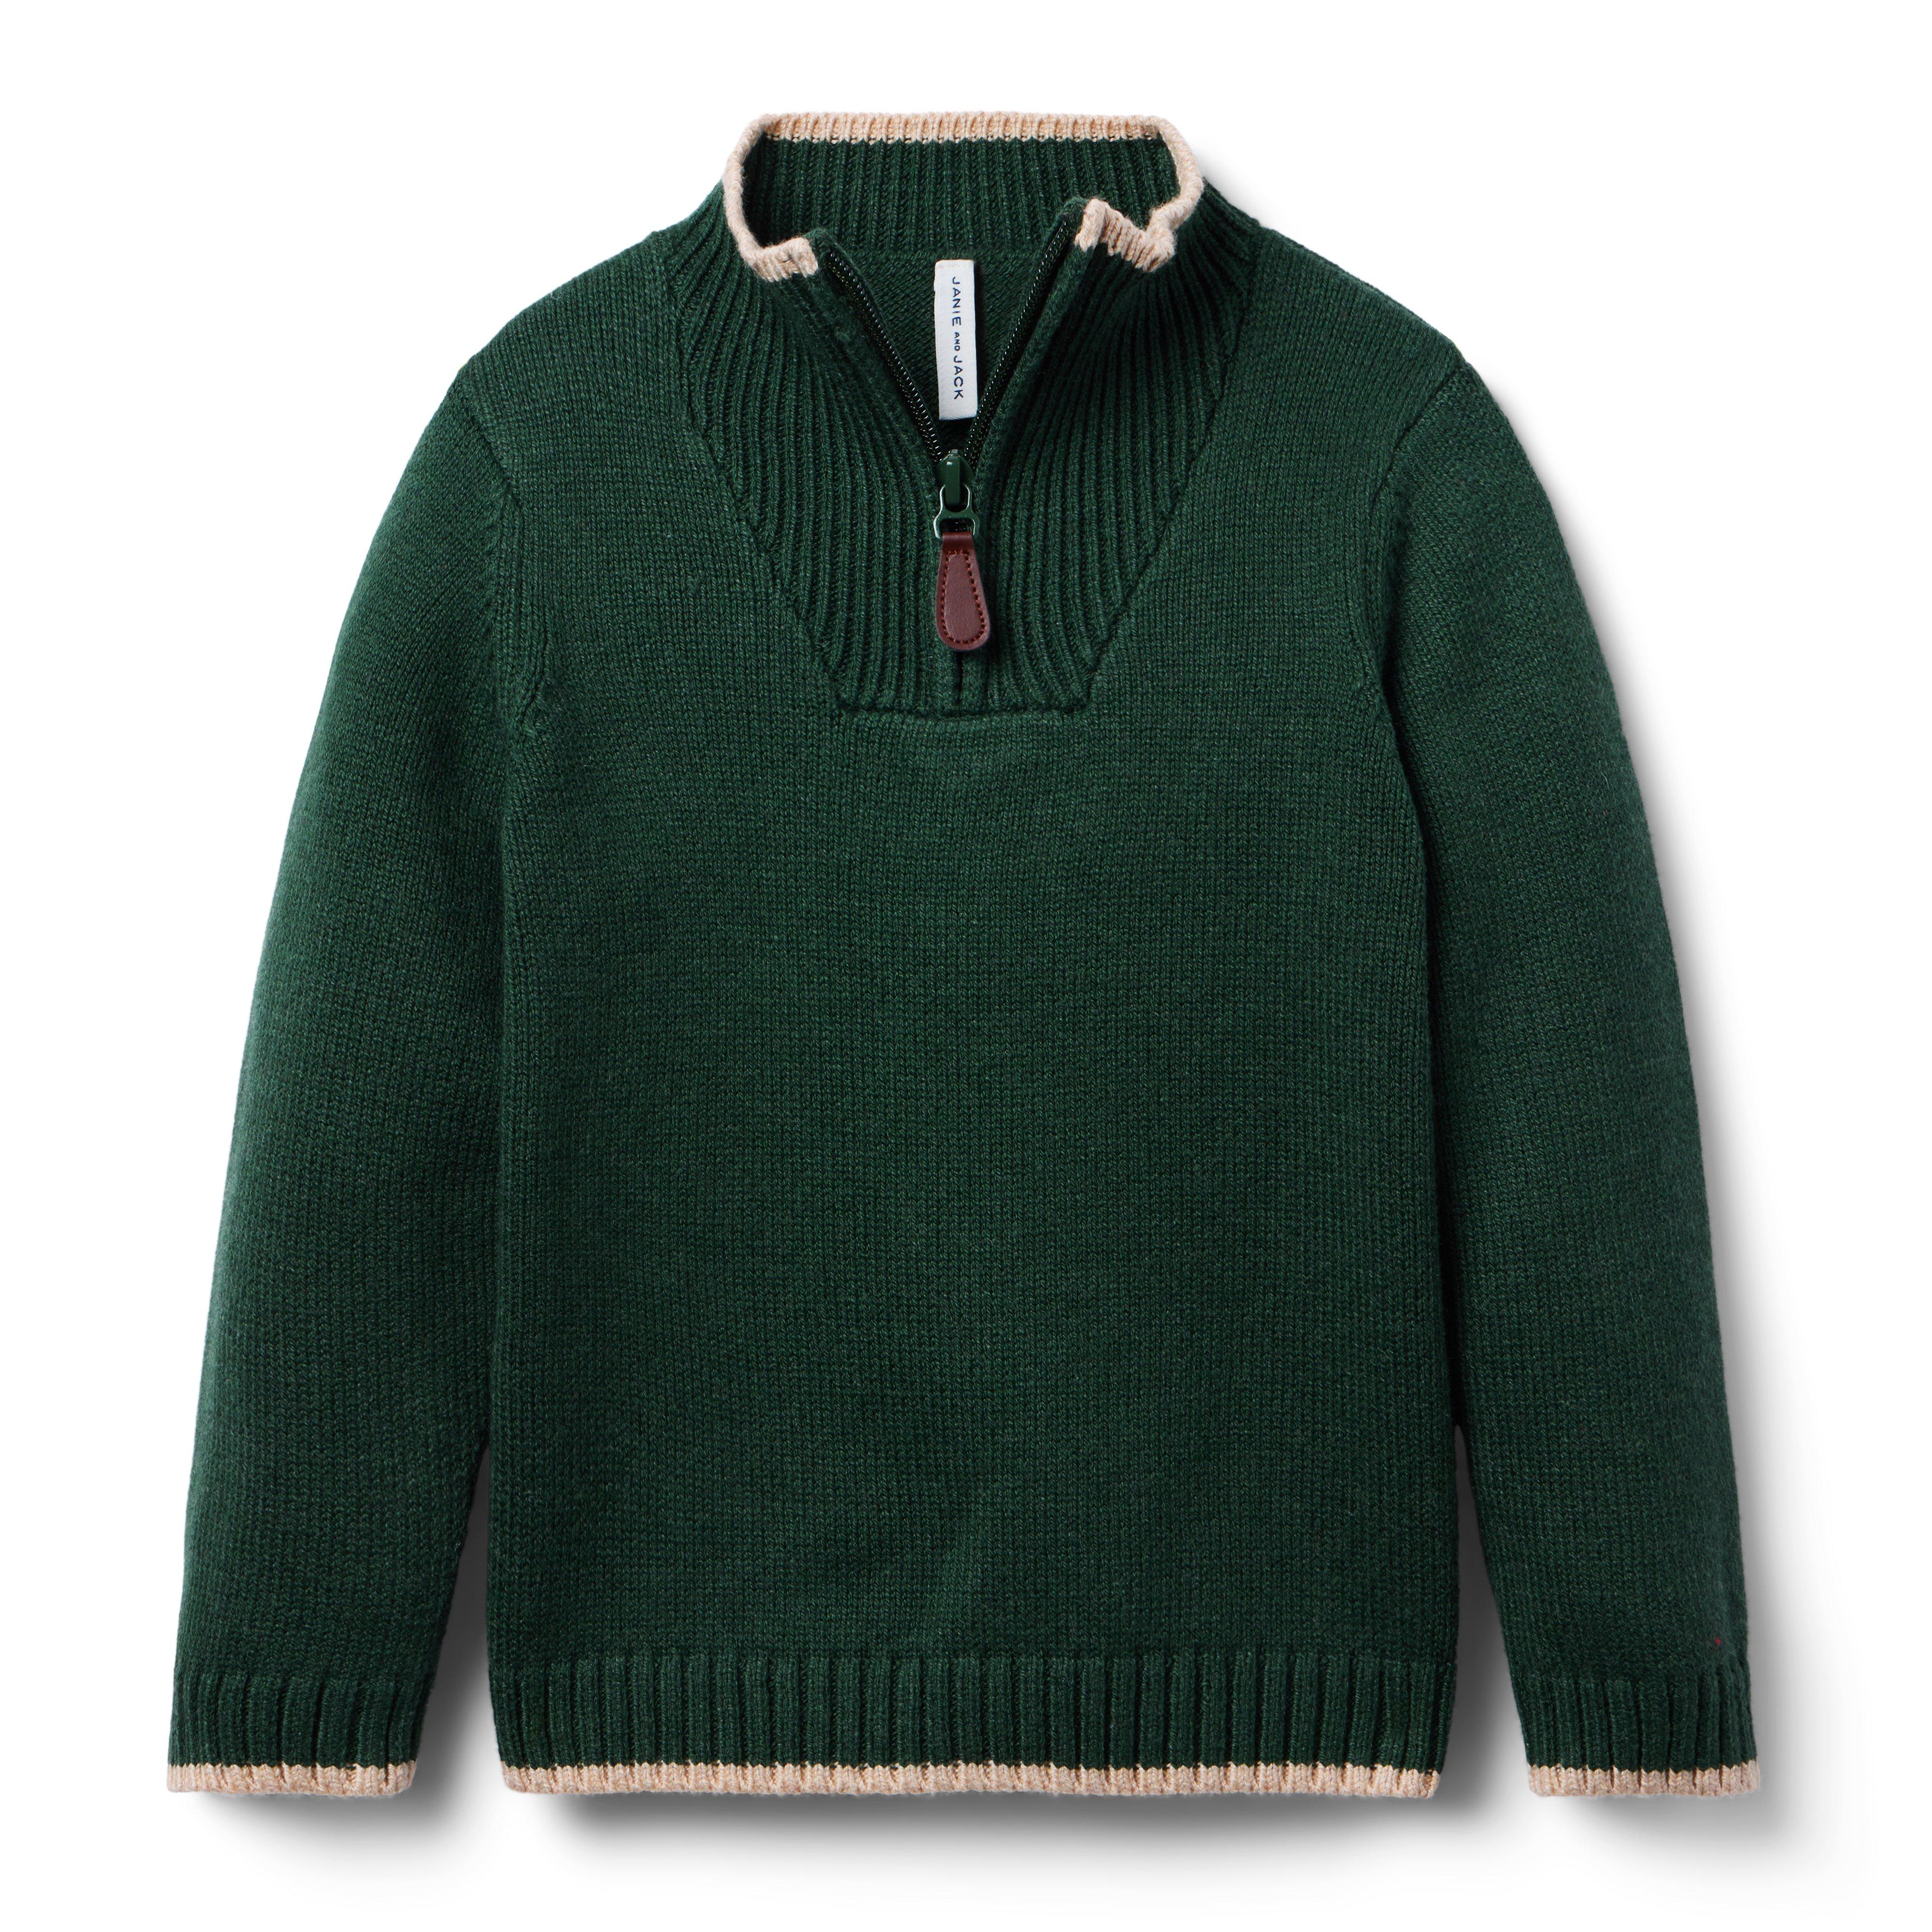 The Half-Zip Sweater